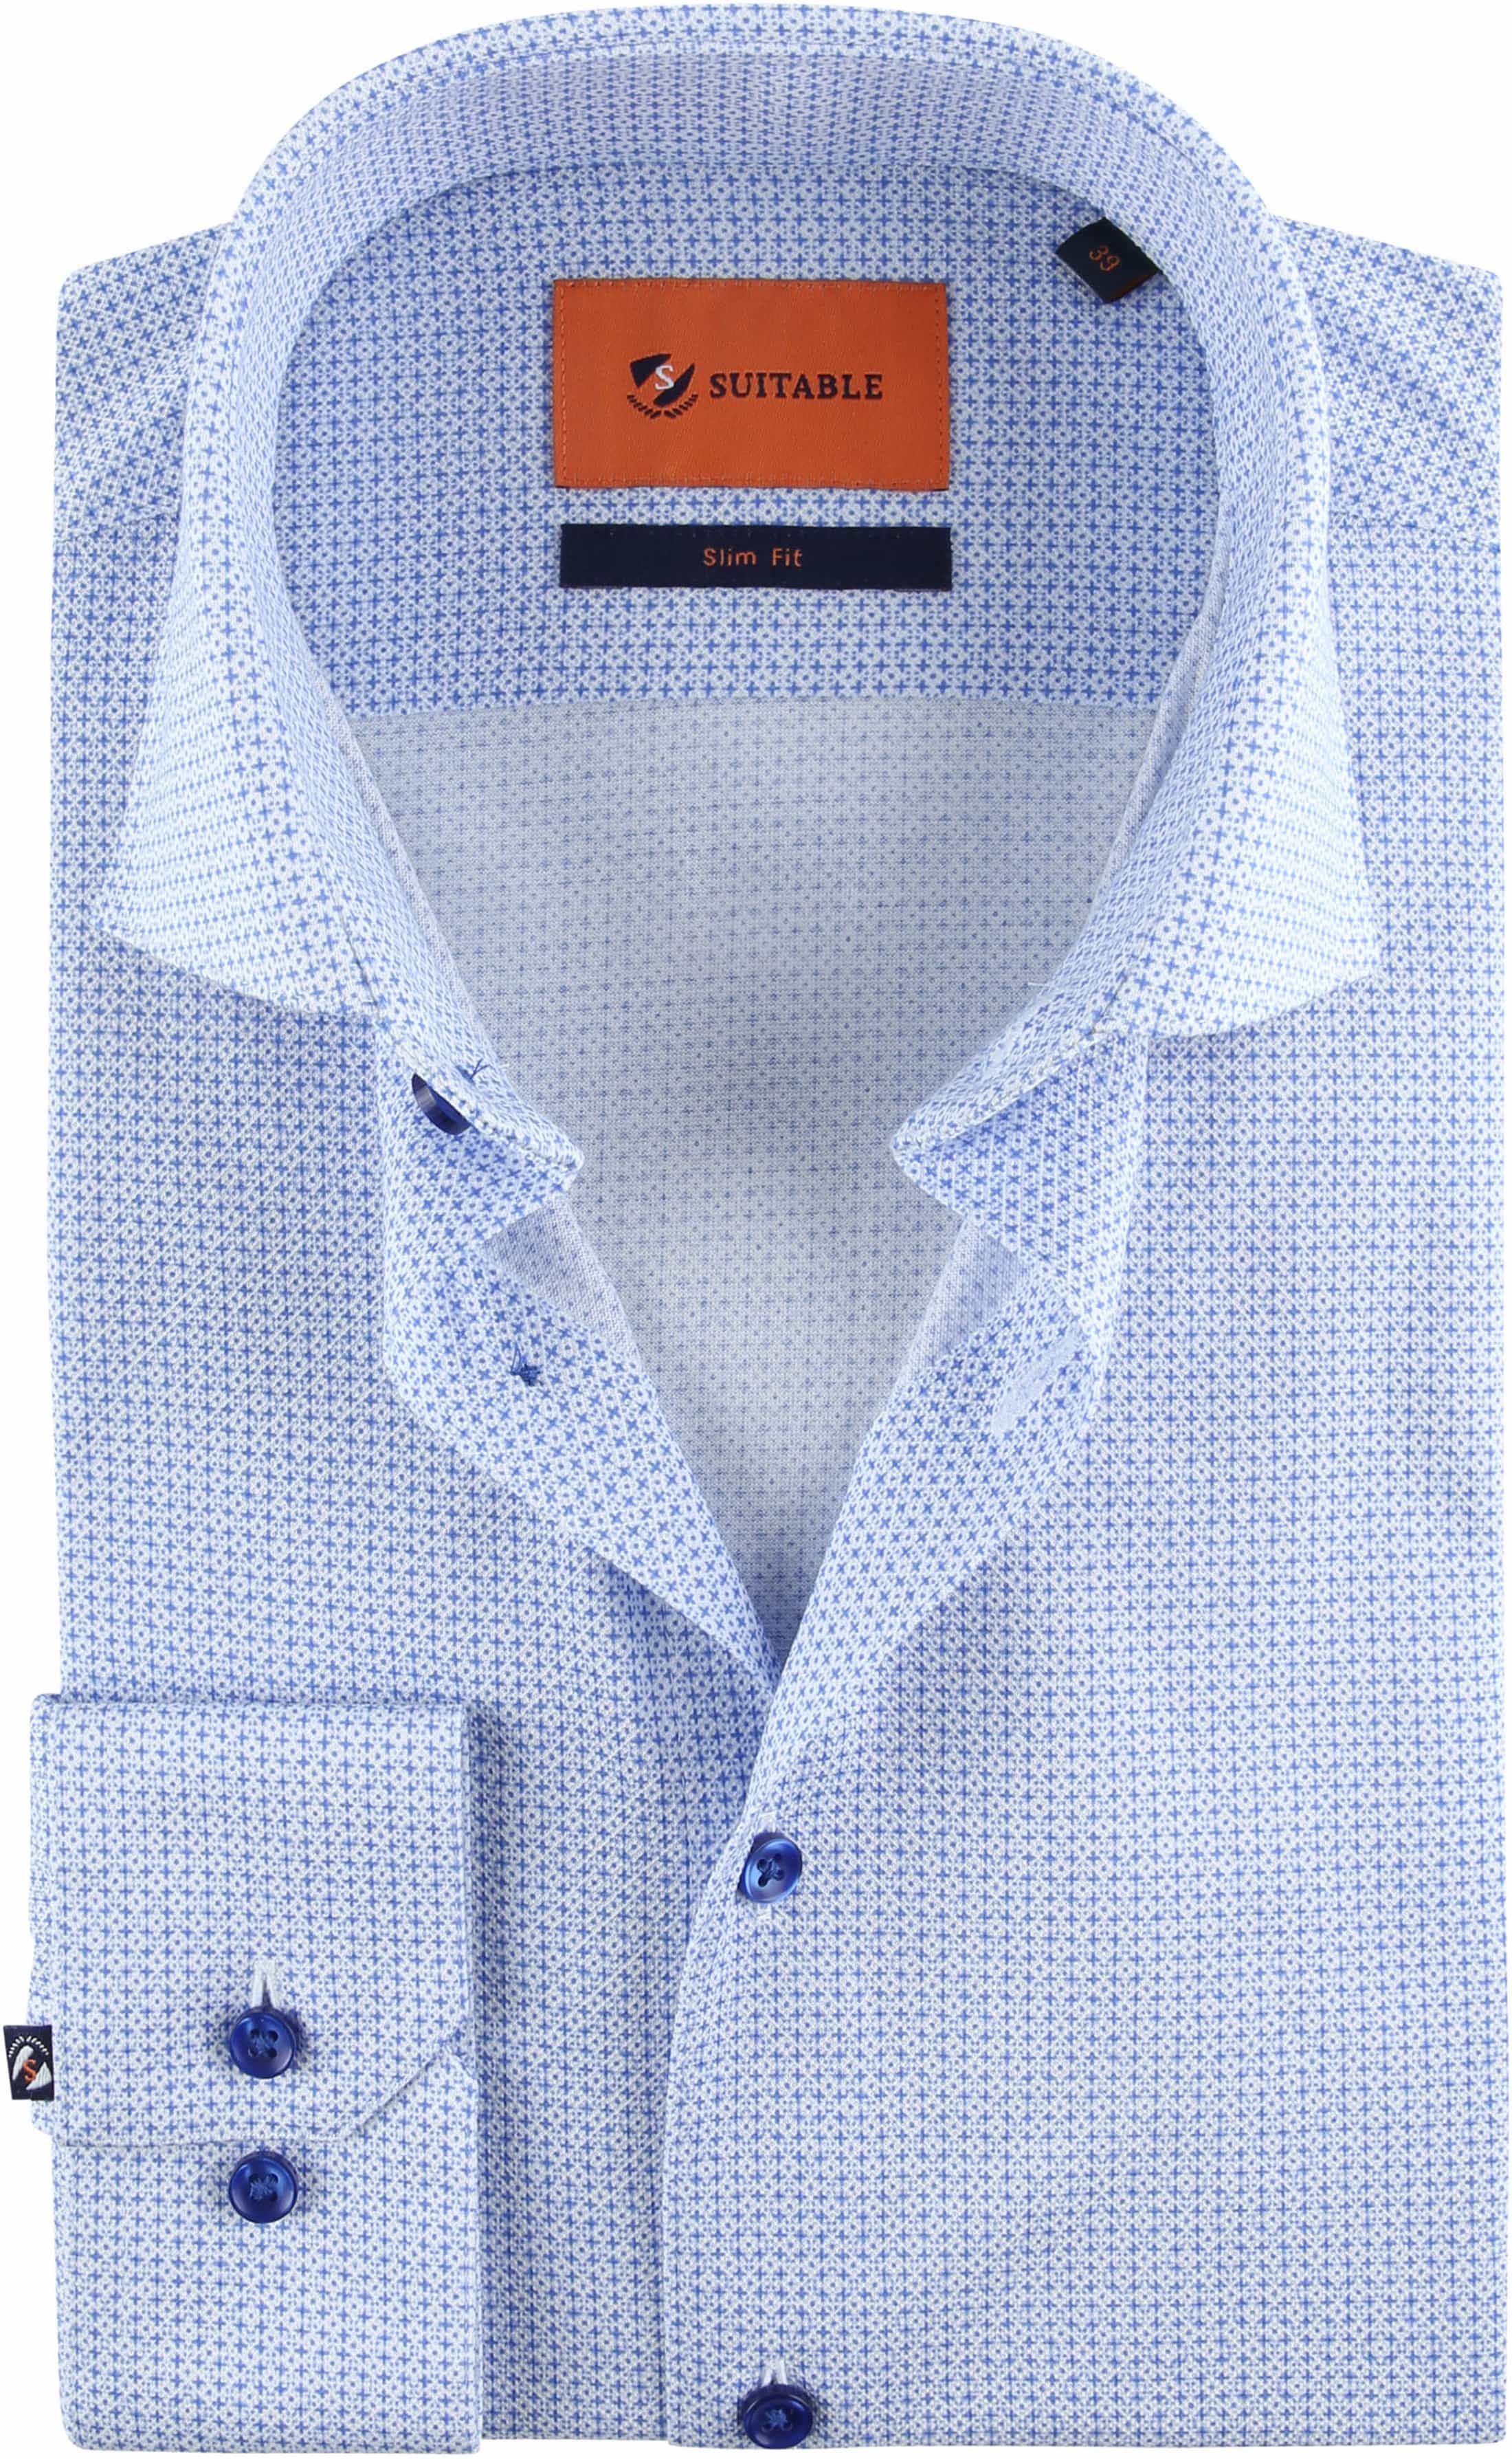 Suitable Jersey Shirt Print Blue size 15